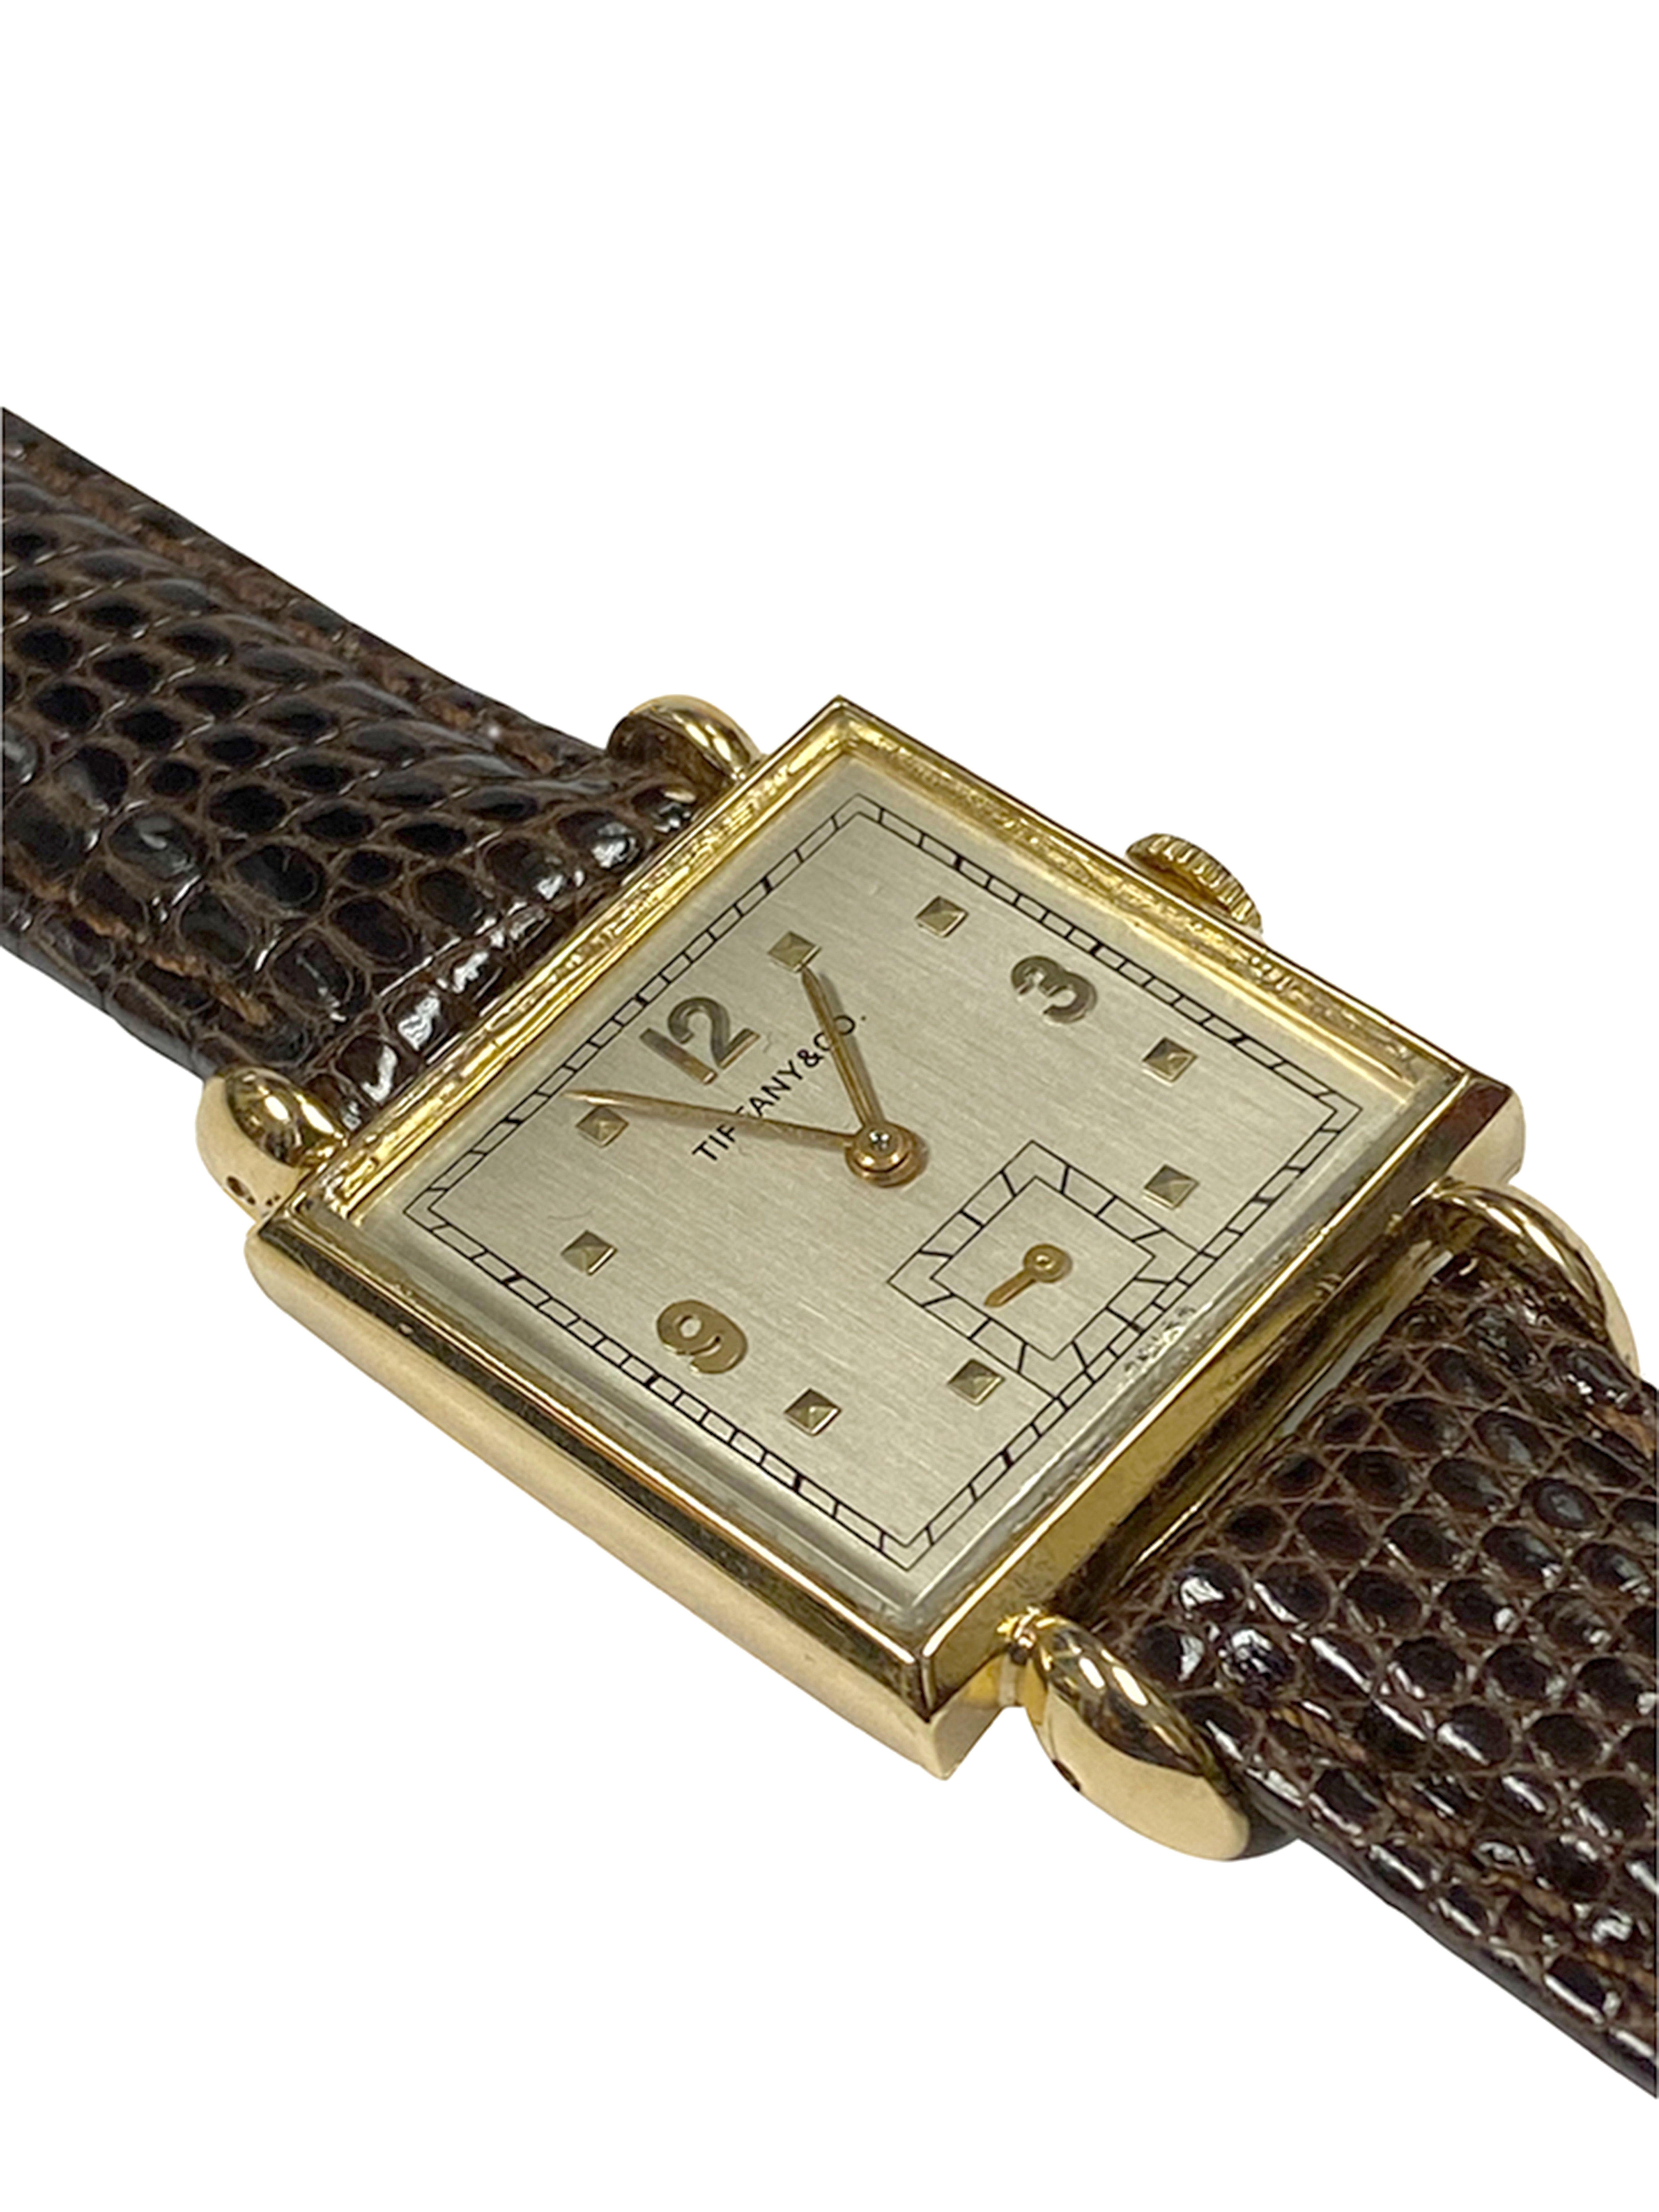 antique wrist watch